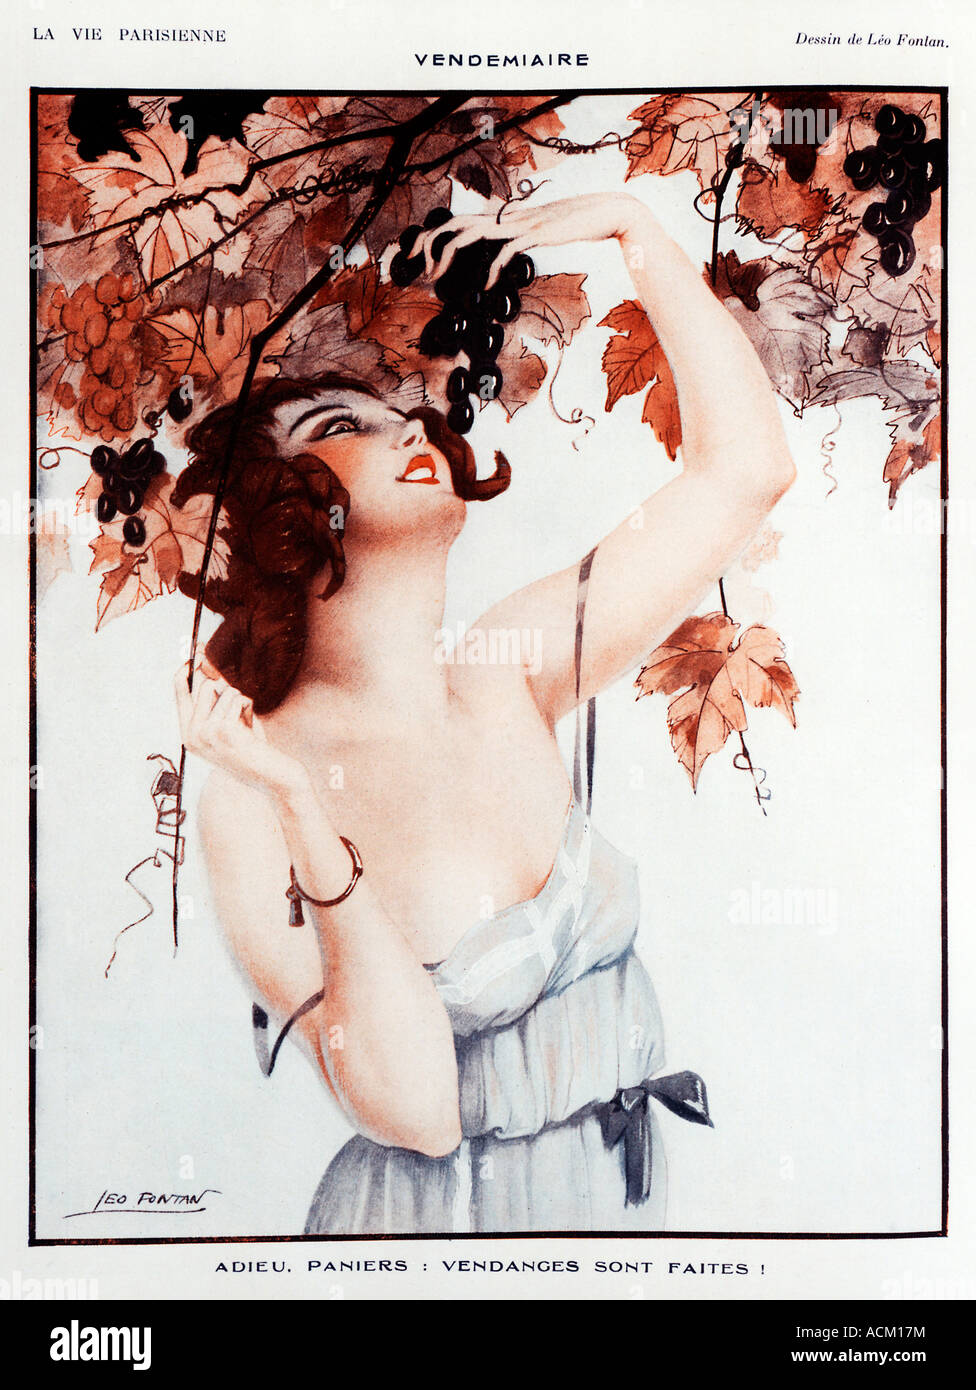 Grape Picking 1920s French illustration from La Vie Parisienne Vendemiare Adieu Paniers Vendages Sont Faites Stock Photo